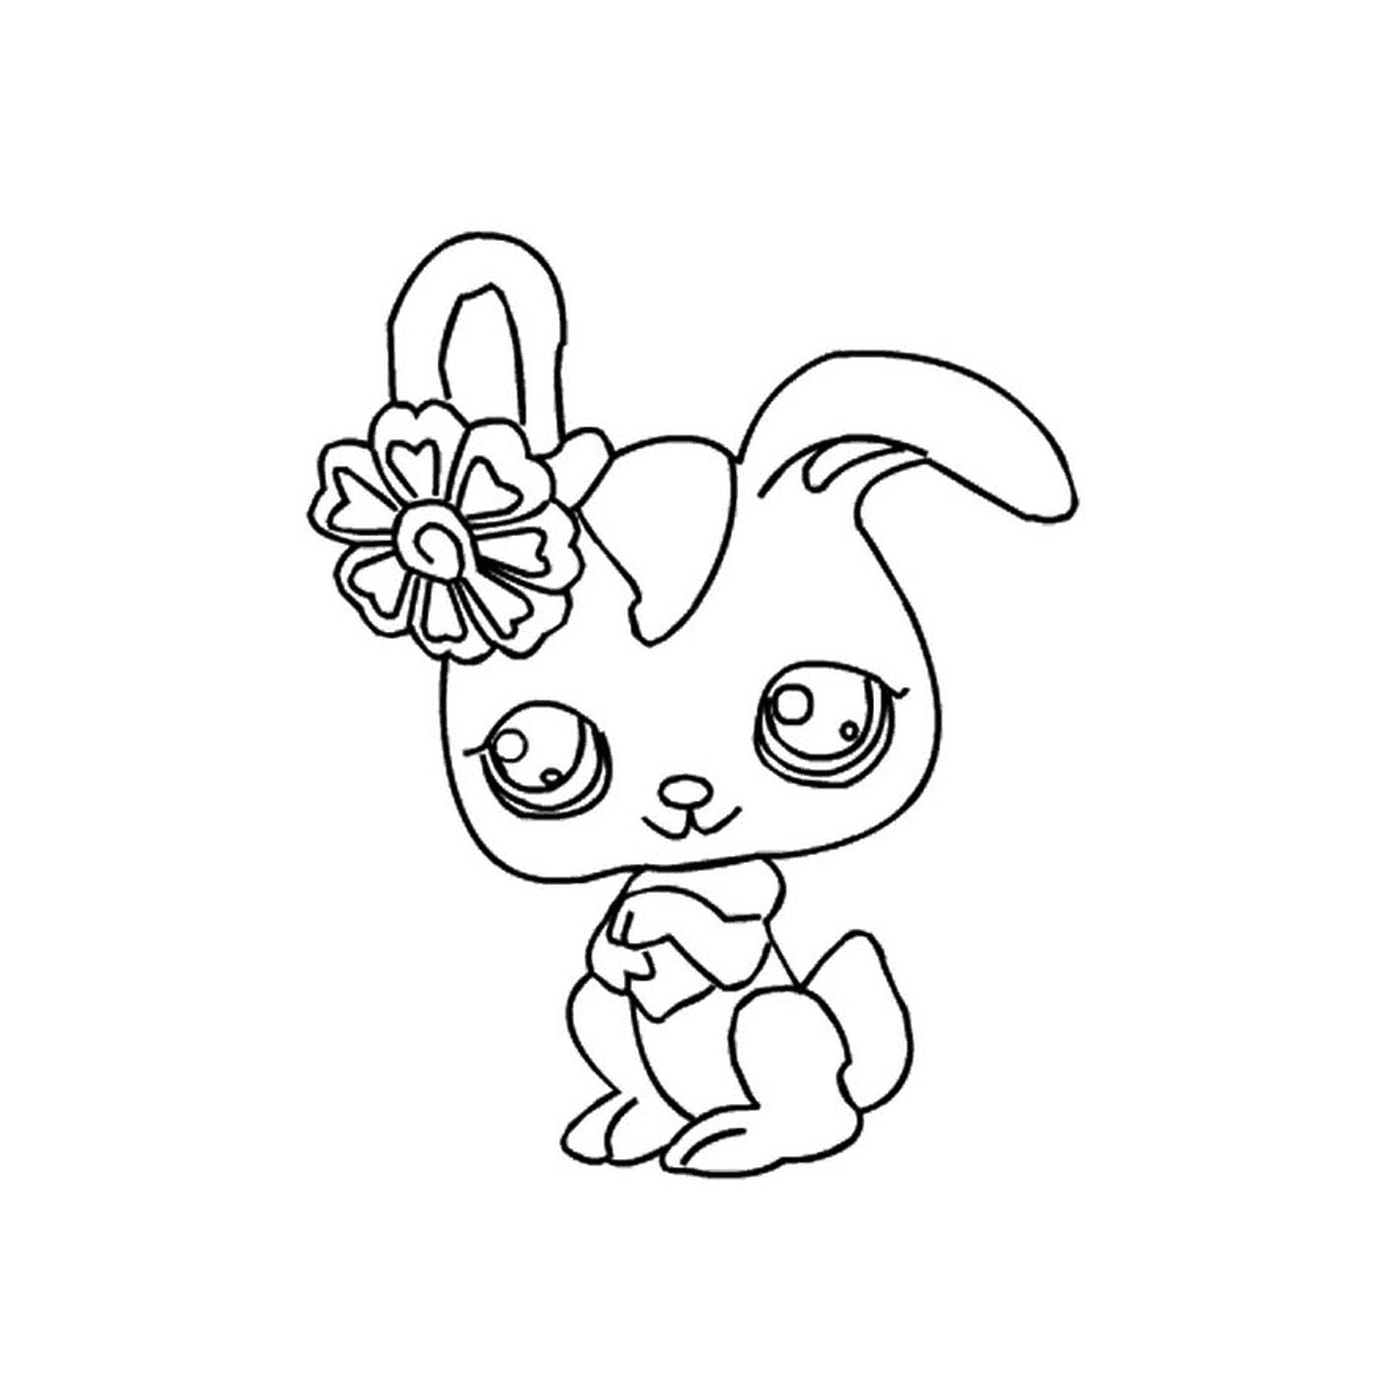   Un lapin avec une fleur dans les cheveux 